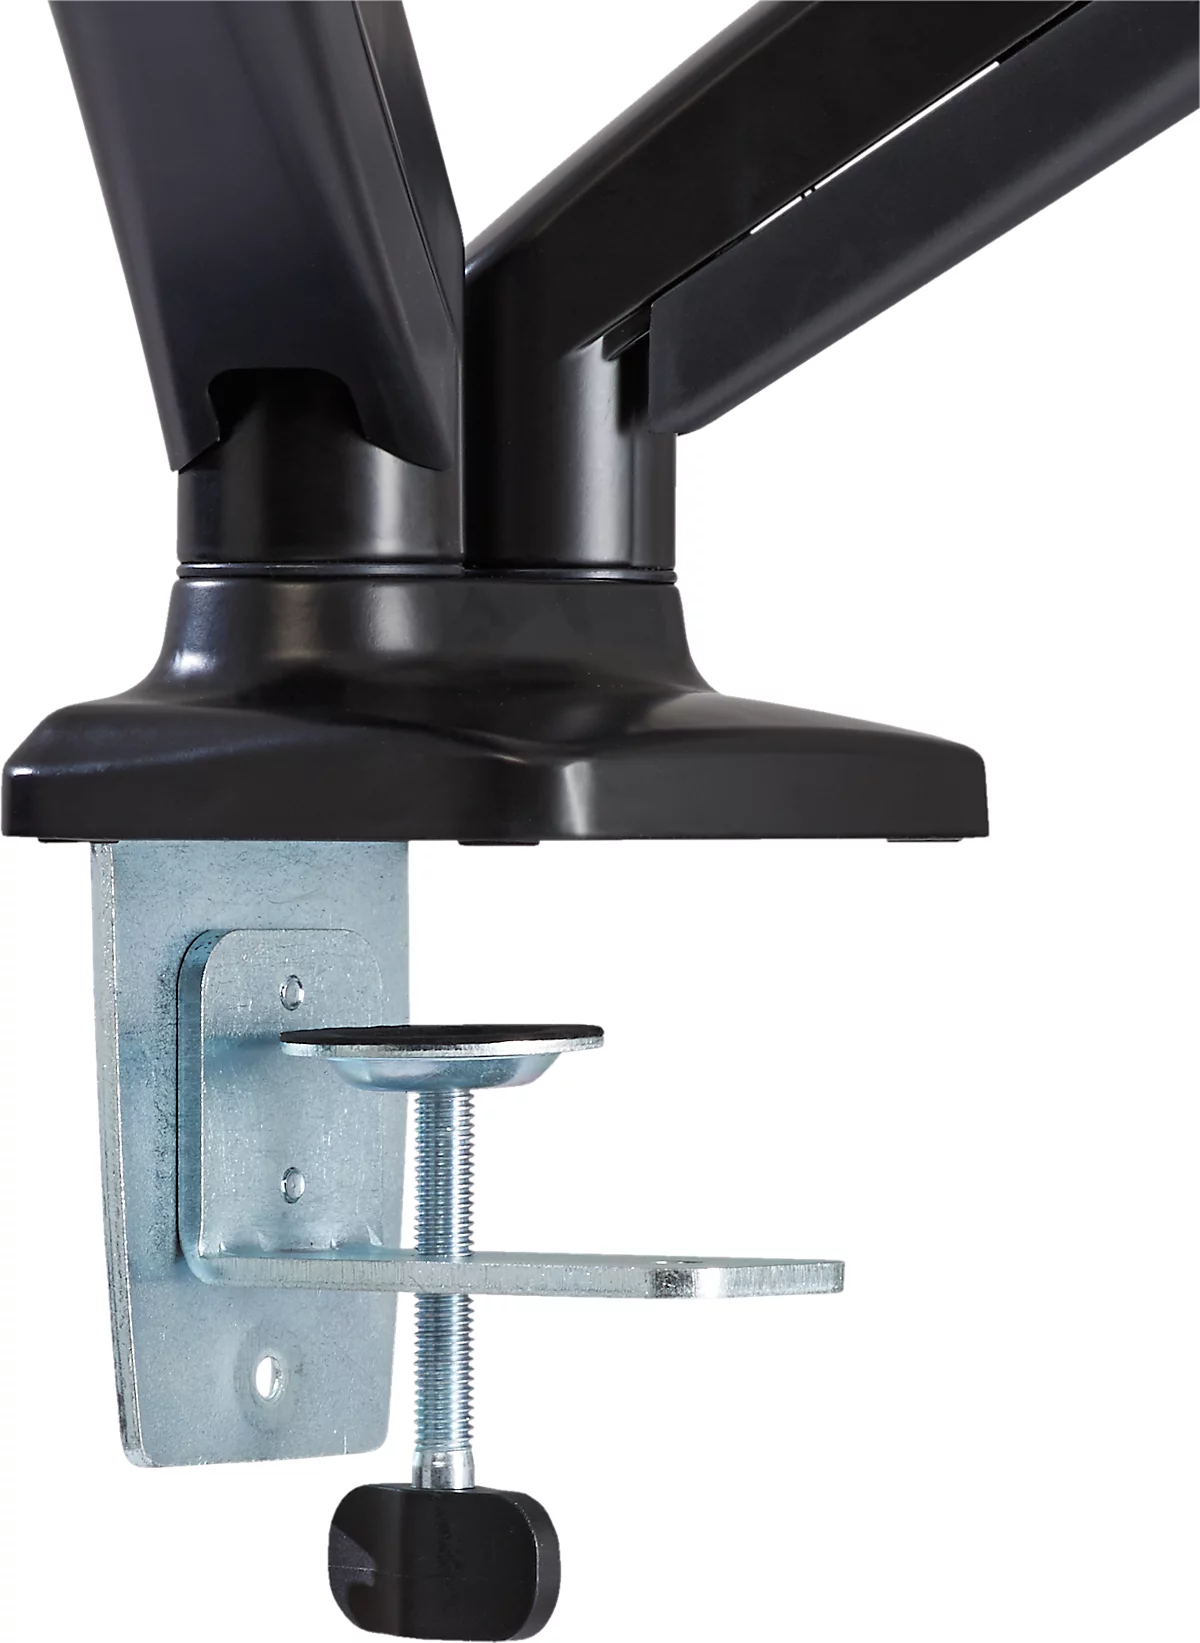 Brazo para monitor Schäfer Shop Select MX8-124, para 2 pantallas de hasta 24″ y hasta 8 kg, inclinación/giro/rotación, altura ajustable, guía de cables, VESA, abrazadera de mesa